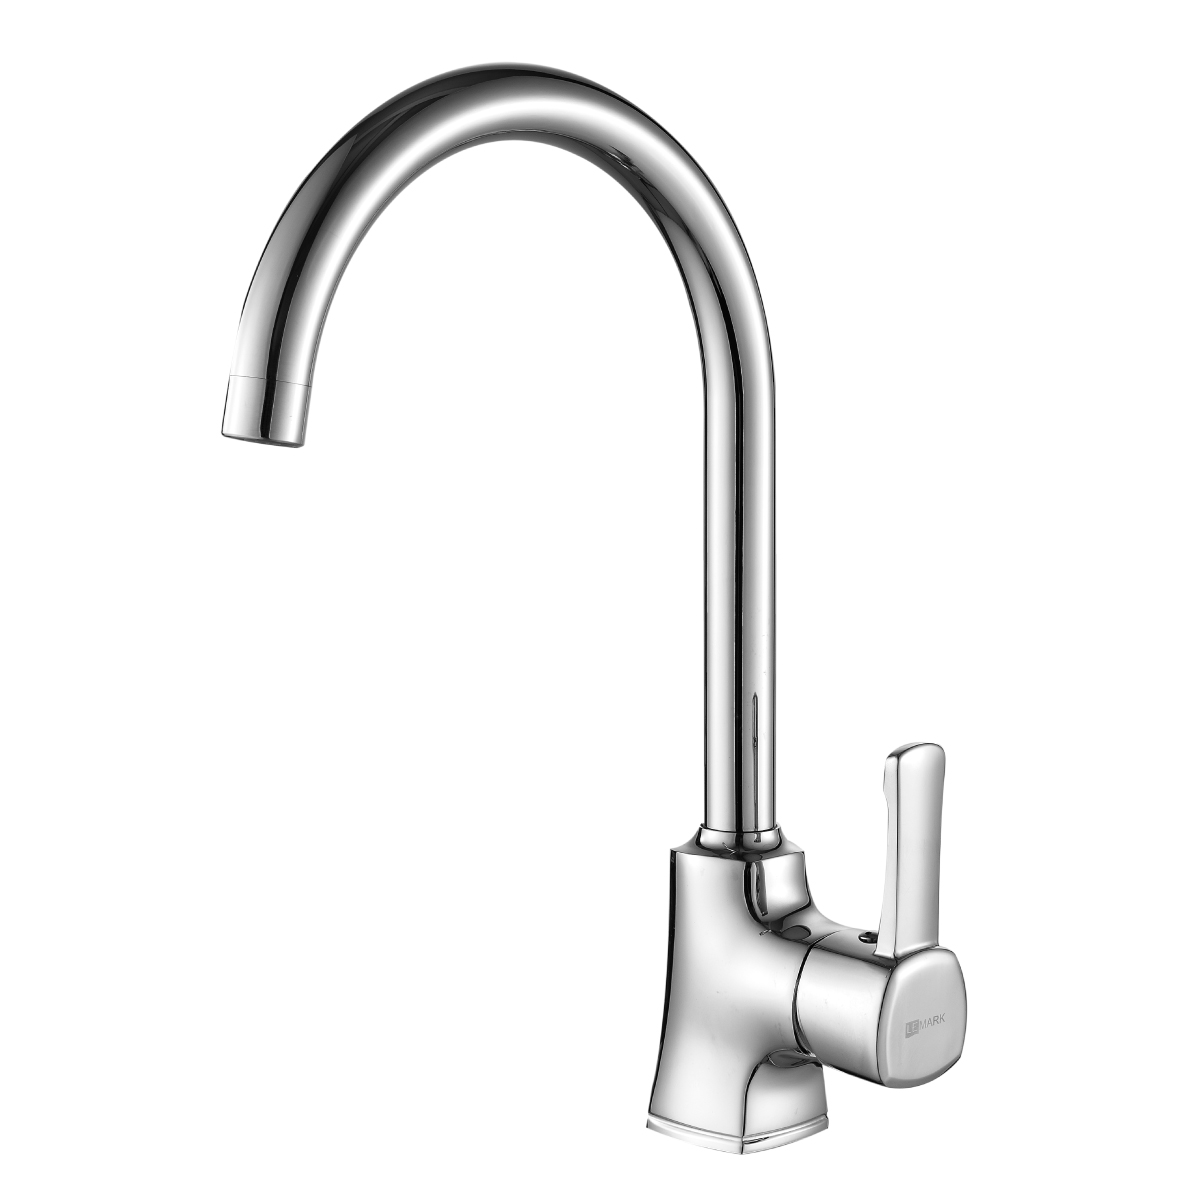 LM0505C Kitchen faucet
with swivel spout